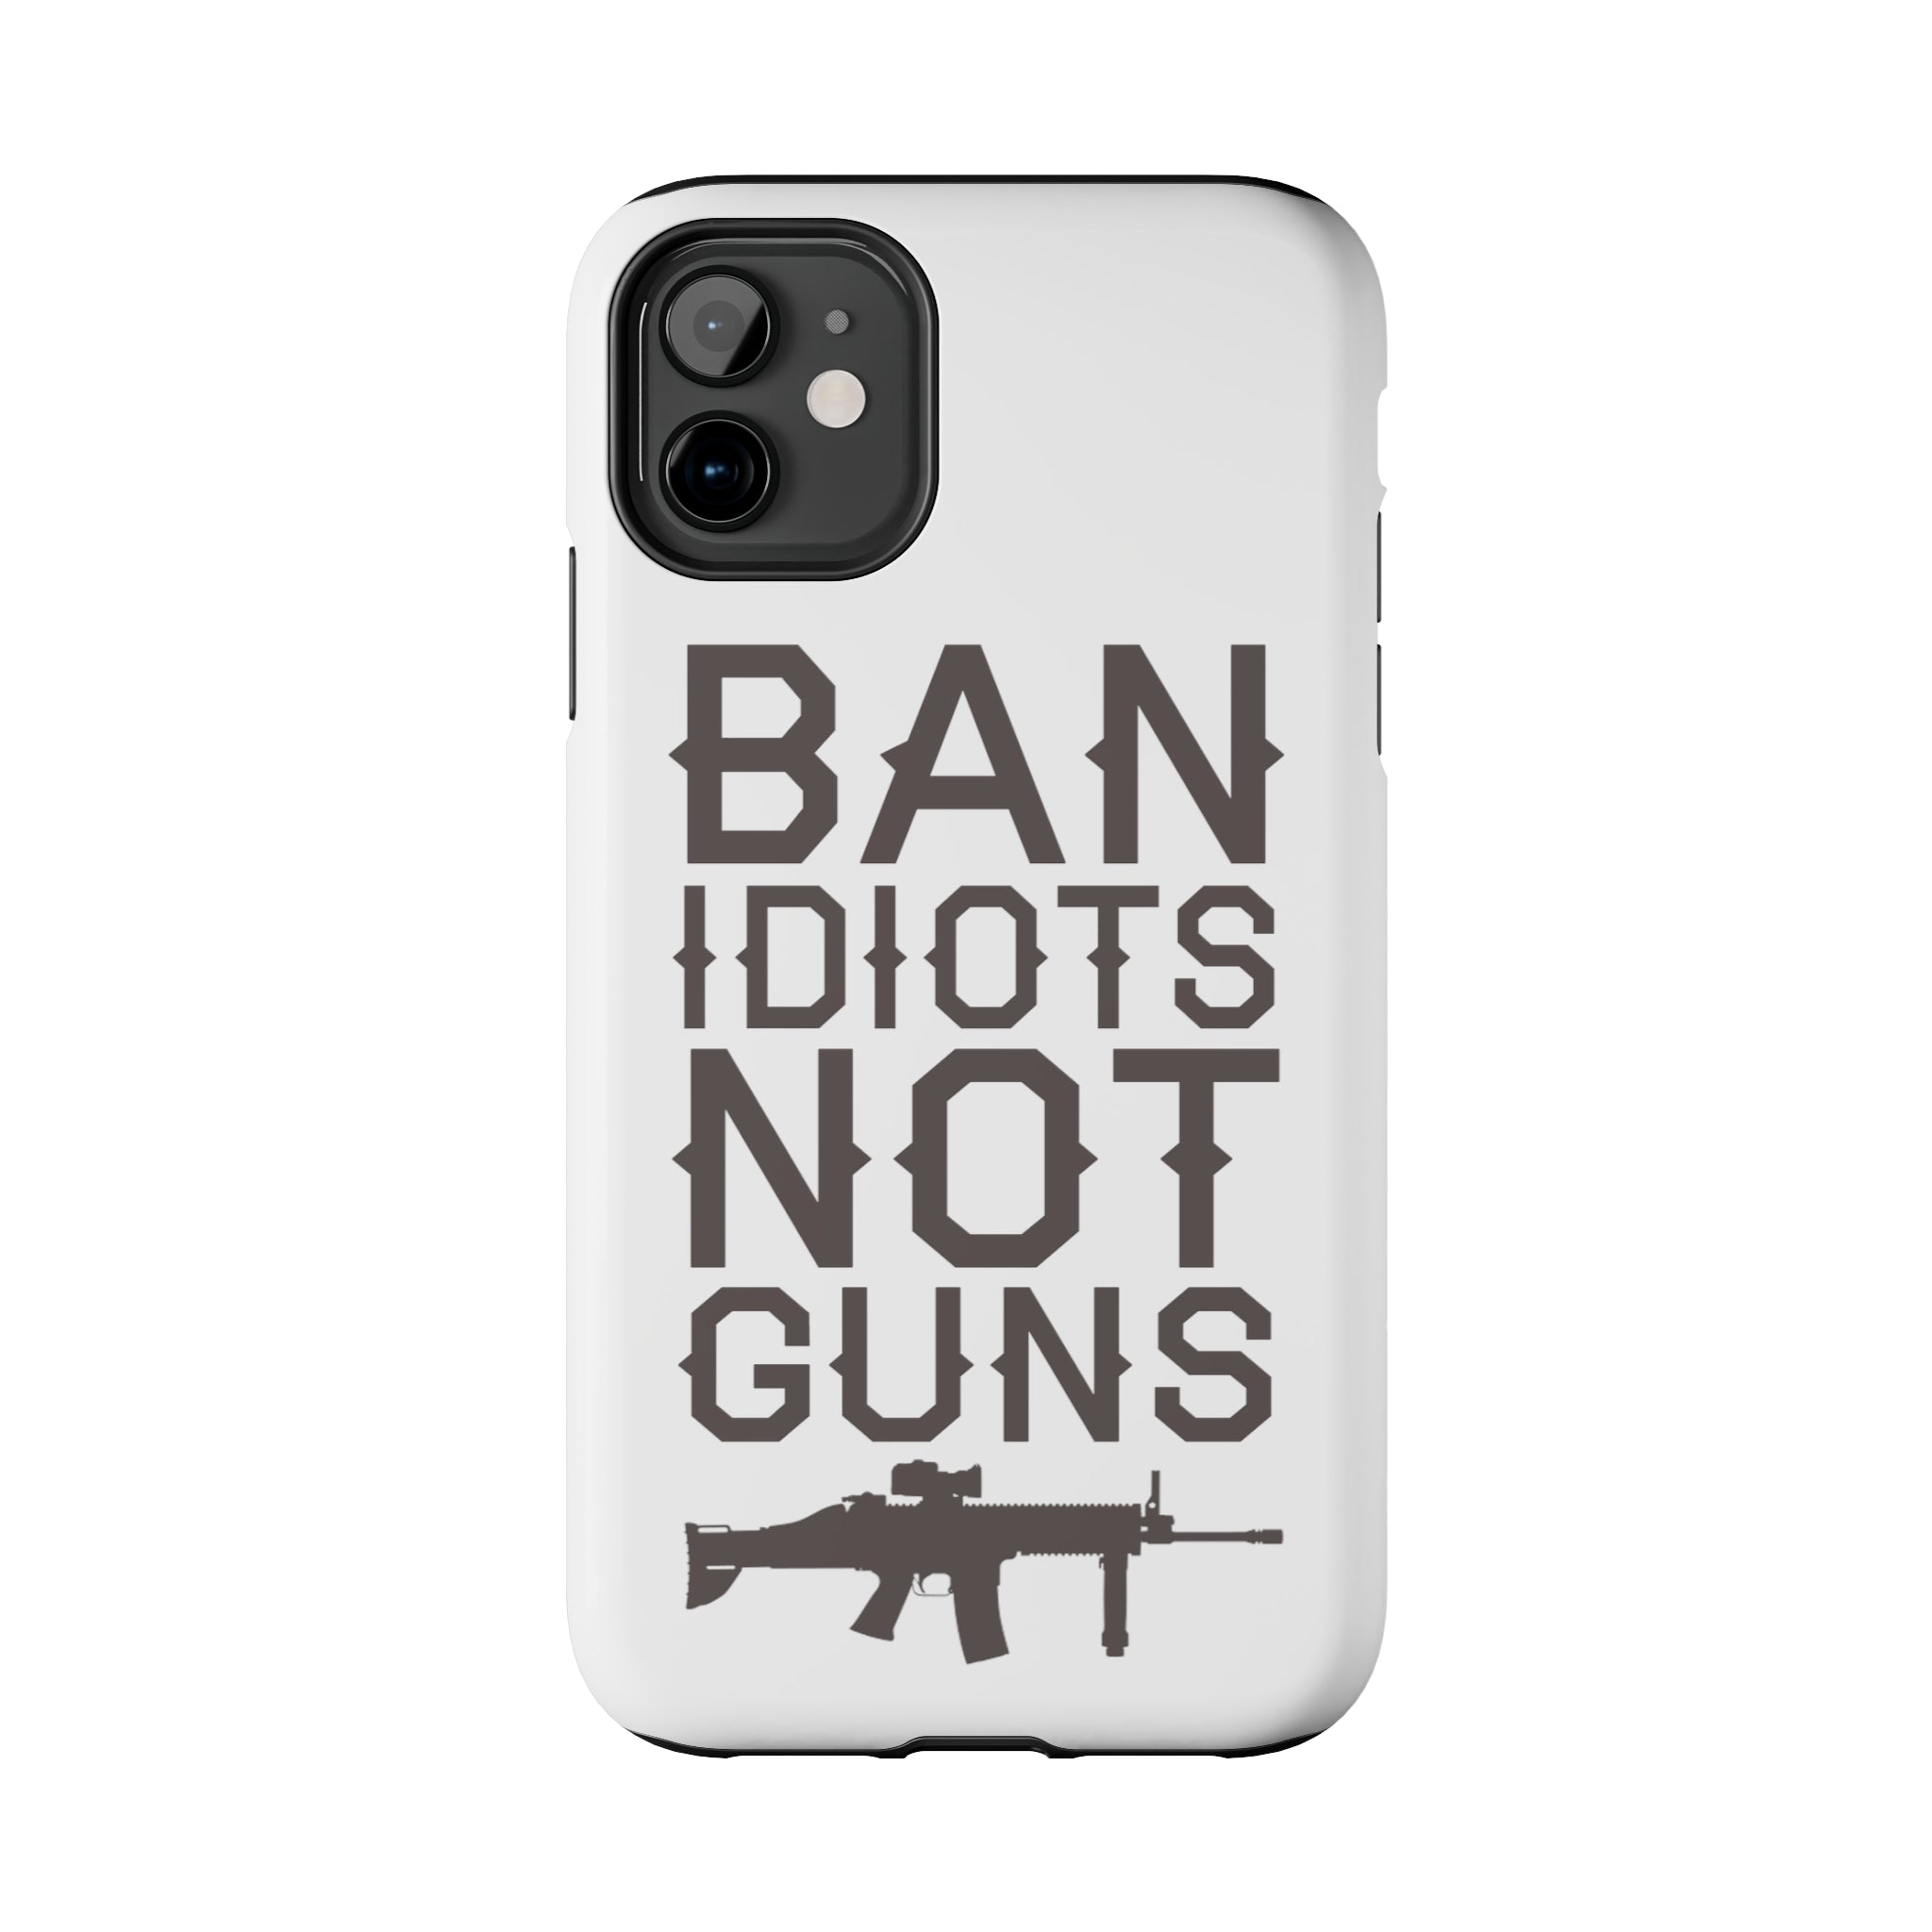 Ban idiotsNot Guns Tough iPhone Cases